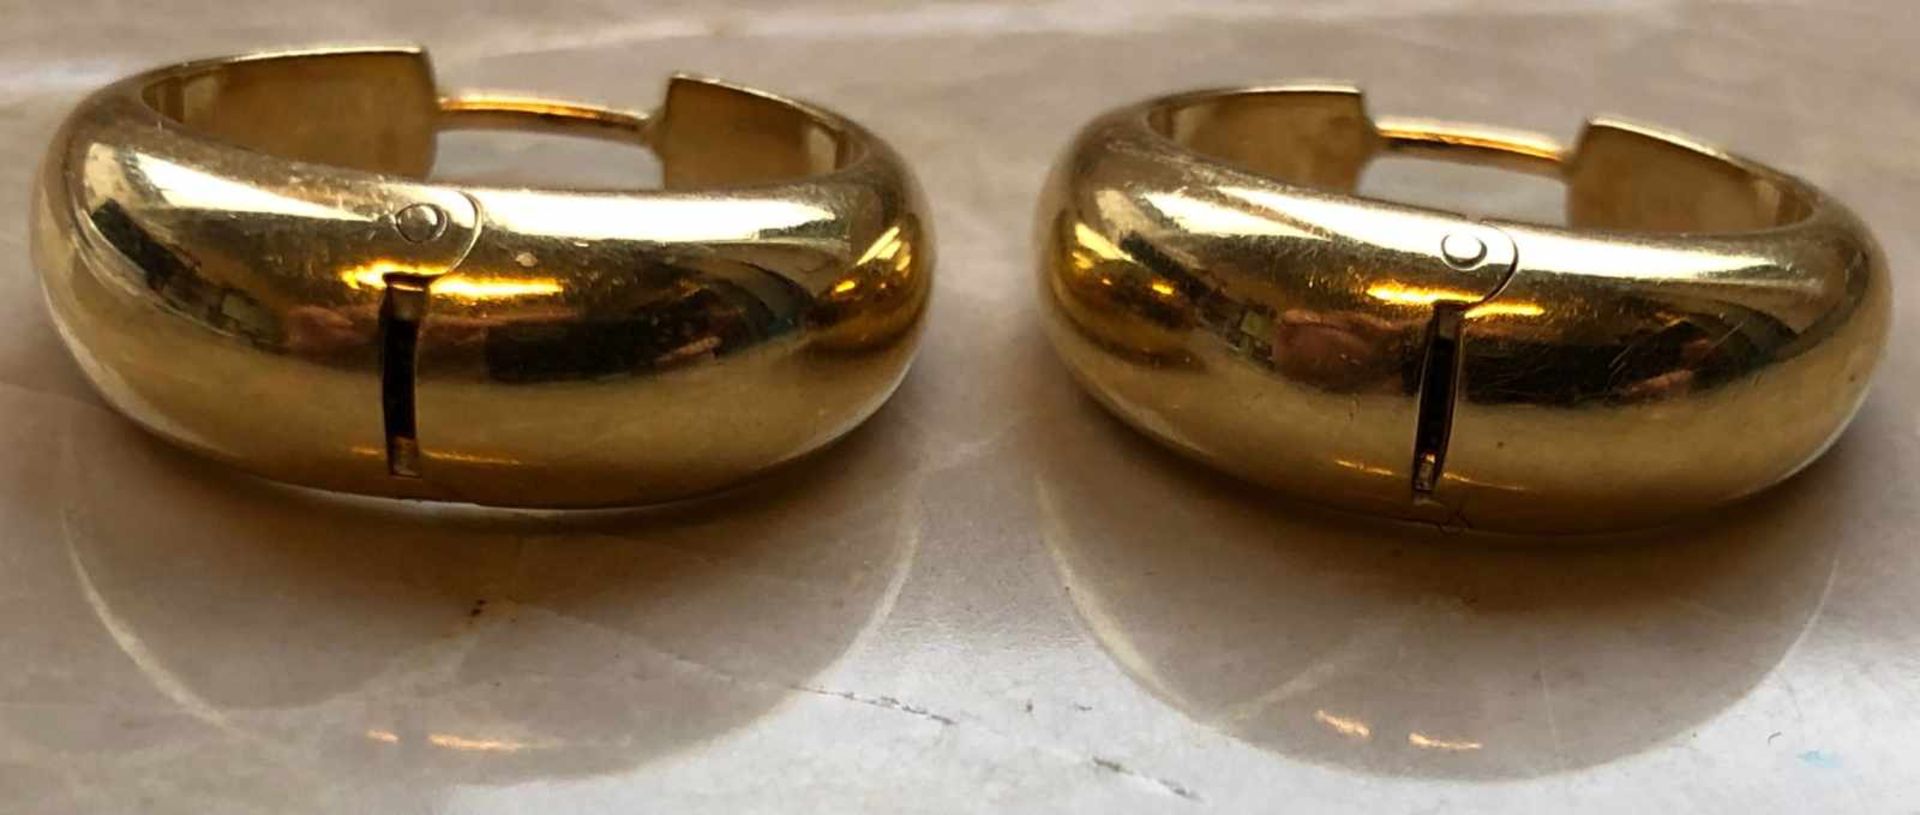 Paar Ohrringe Gold 750. Handarbeit. Marken.9,5 Gramm. 22 mm Durchmesser.Pair of earrings 750 gold. - Bild 2 aus 6